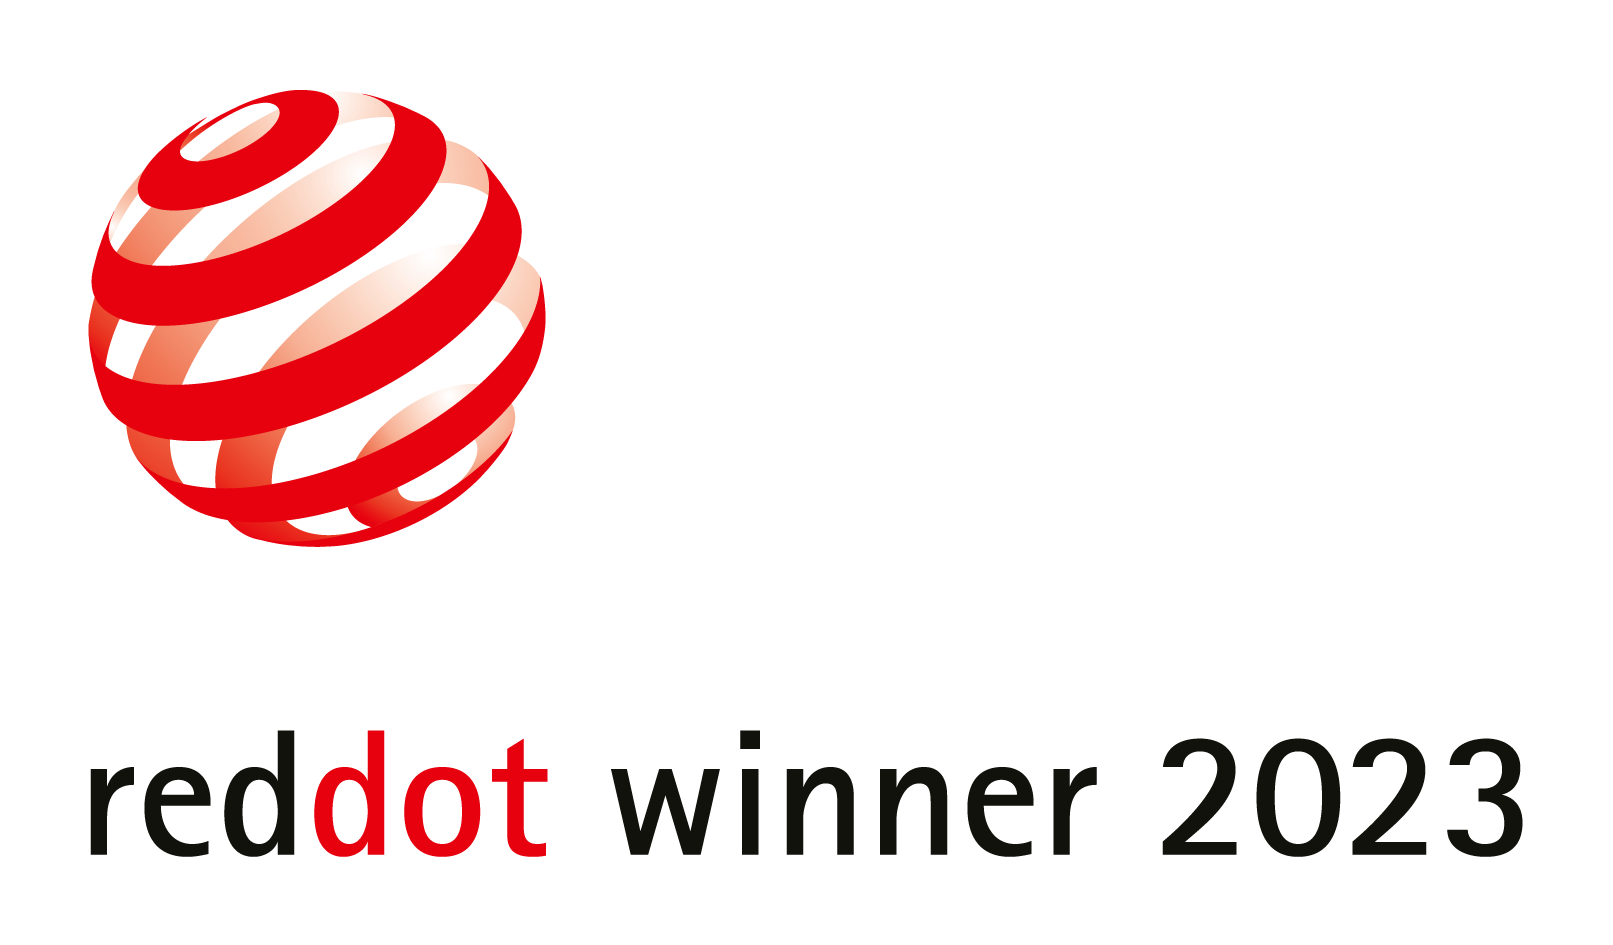 Dieses Bild zeigt das Logo des red Dot Design Award 2023, den Identity Lab gewonnen hat.